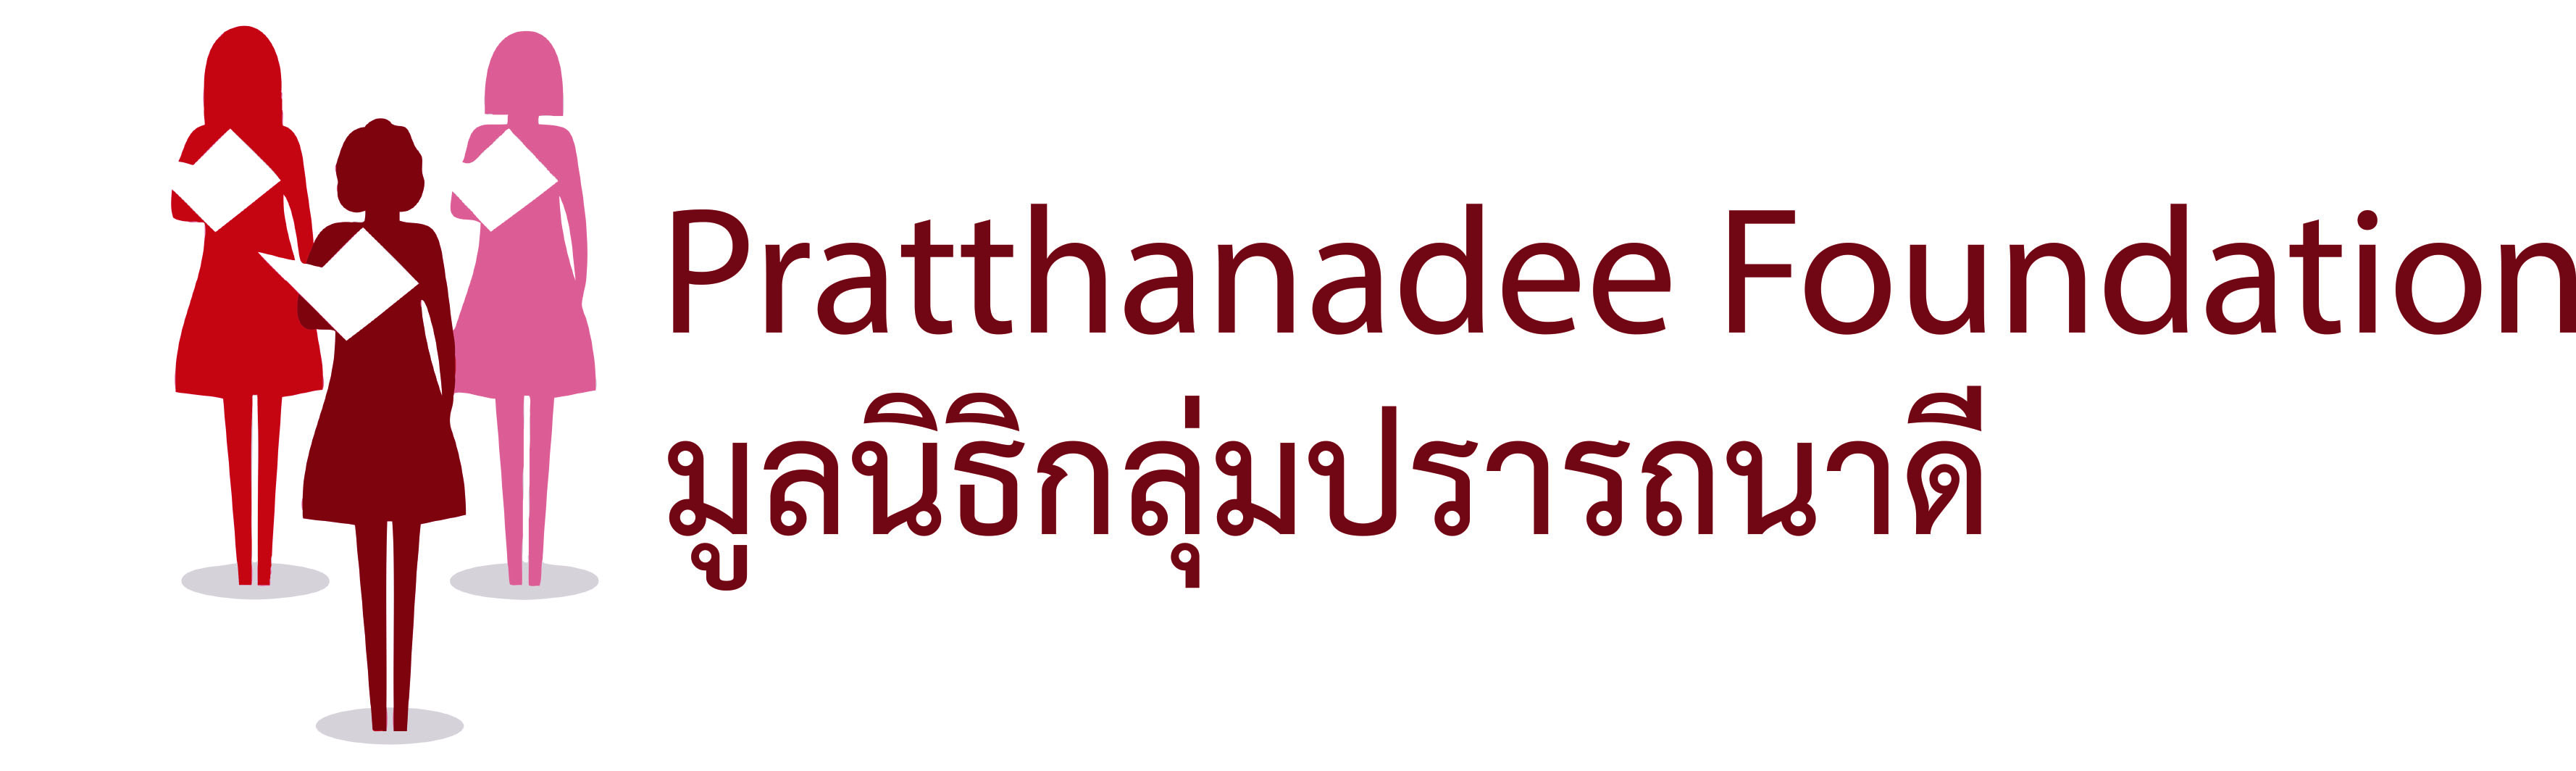 Pratthanadee Foundation